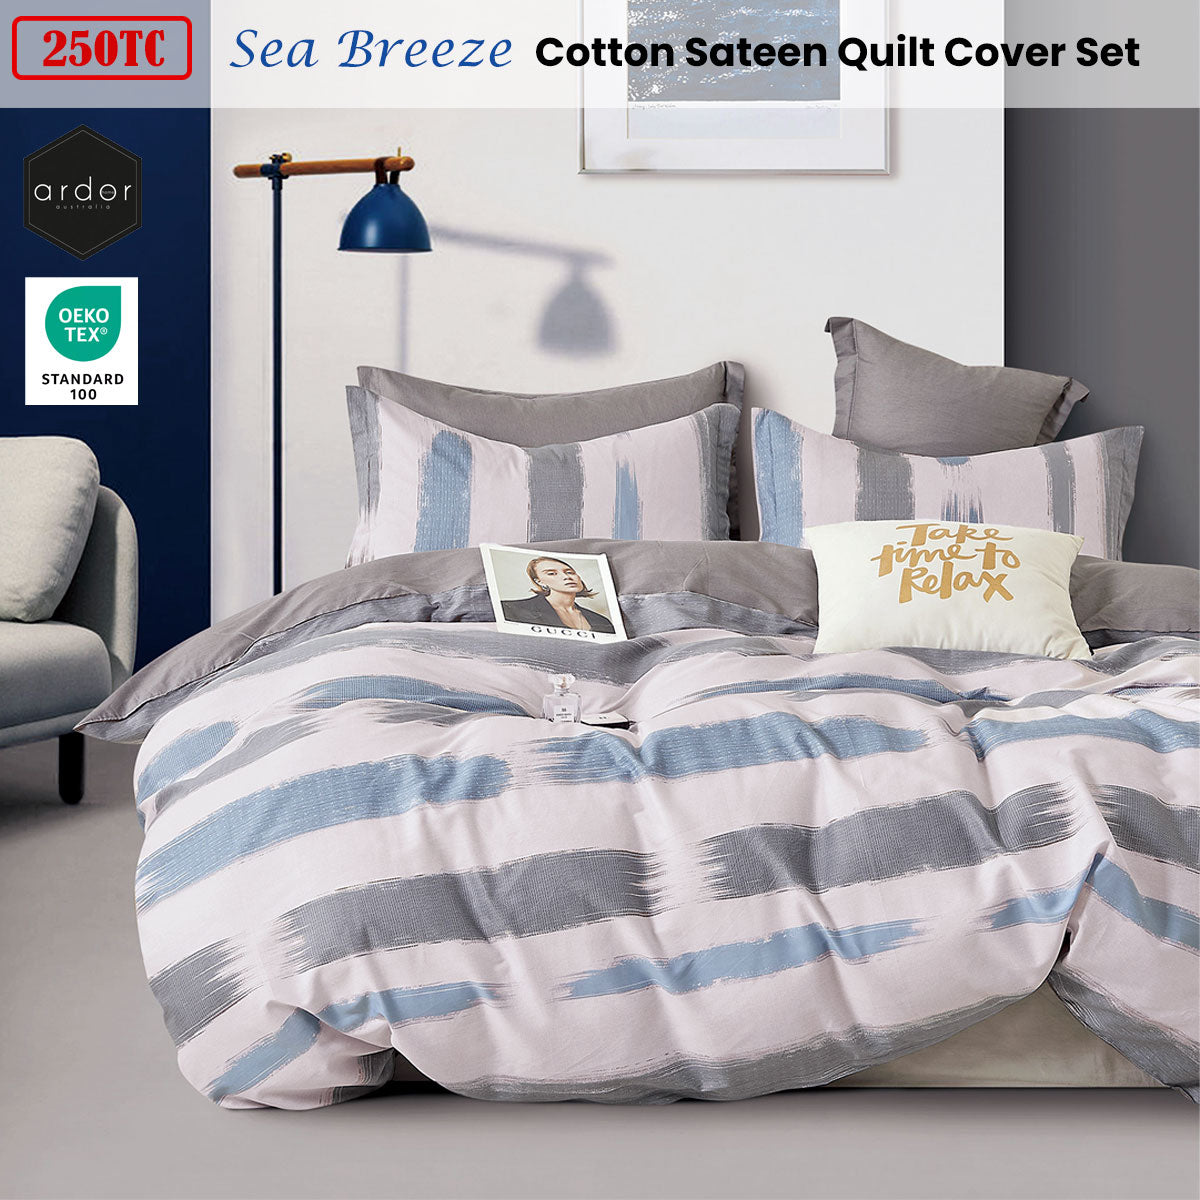 Ardor 250TC Sea Breeze Cotton Sateen Quilt Cover Set Queen - Home & Garden > Bedding - Zanlana Design and Home Decor